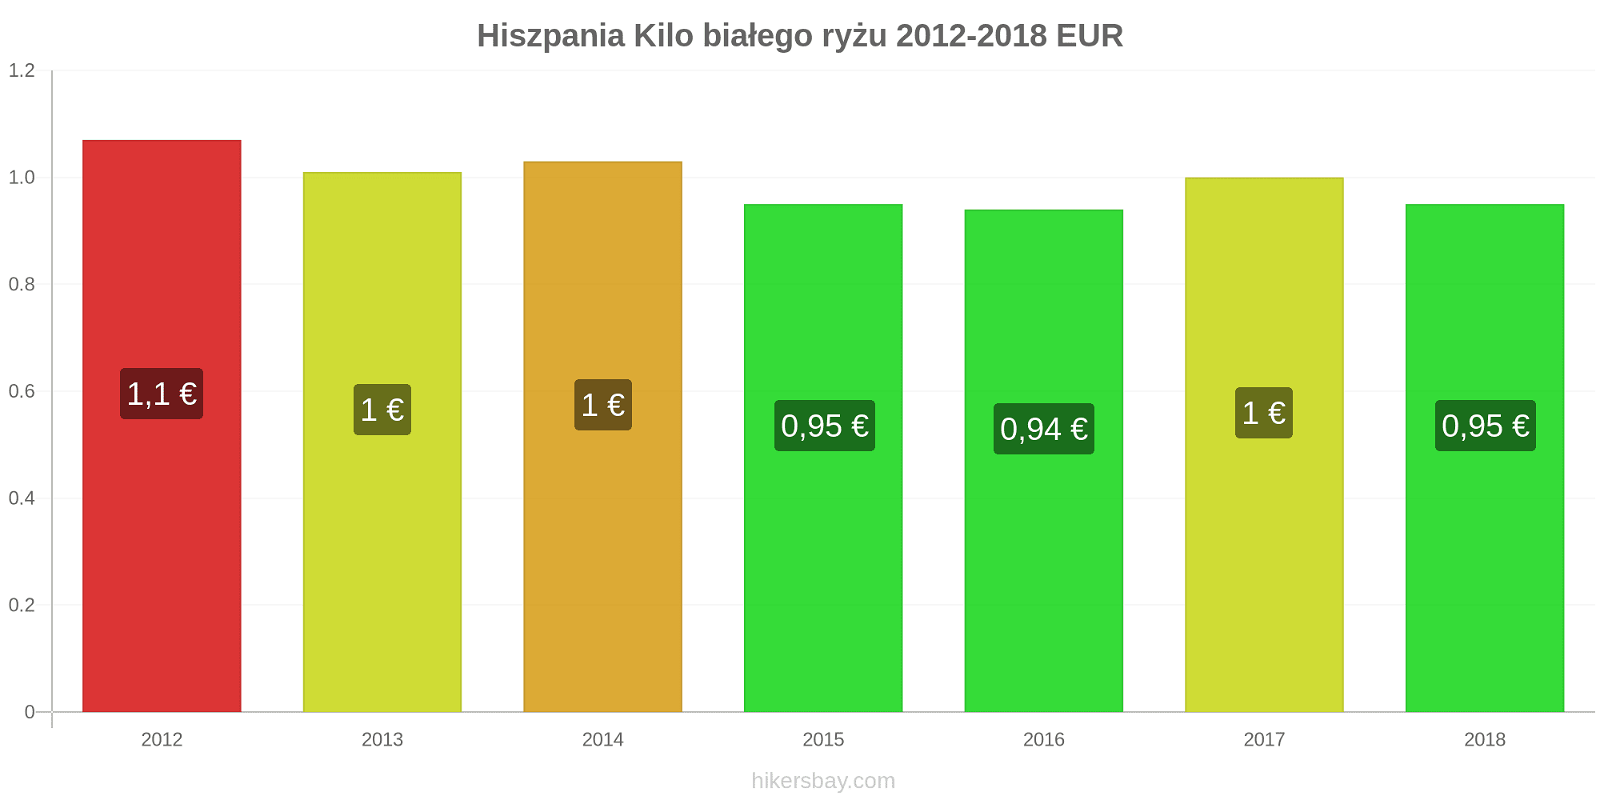 Hiszpania zmiany cen Kilo białego ryżu hikersbay.com